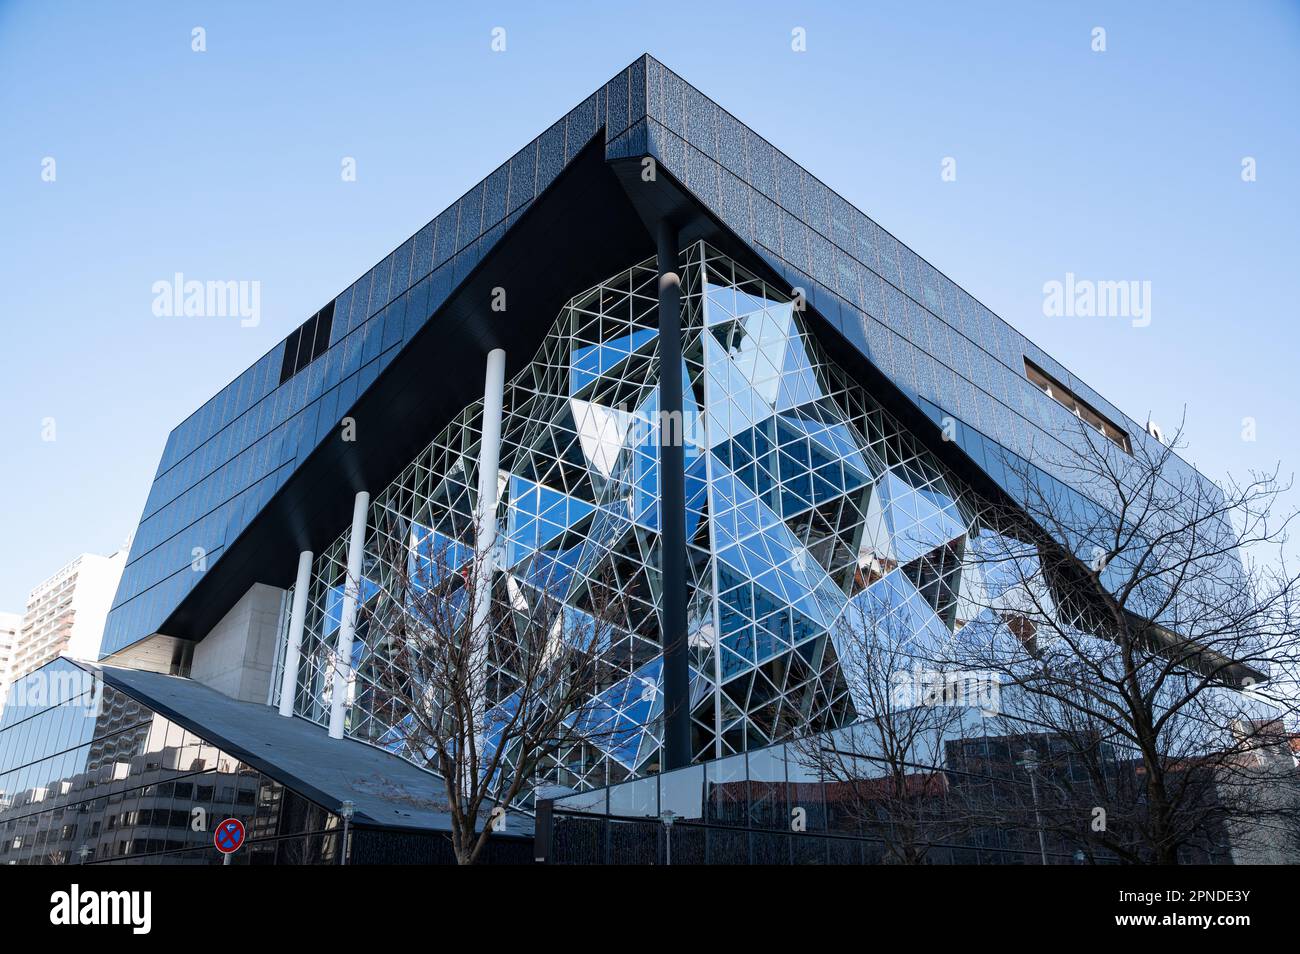 28.02.2023, Berlino, Germania, Europa - Vista con atrio smaltato del nuovo edificio Axel Springer in località Kreuzberg dell'architetto olandese Koolhaas. Foto Stock